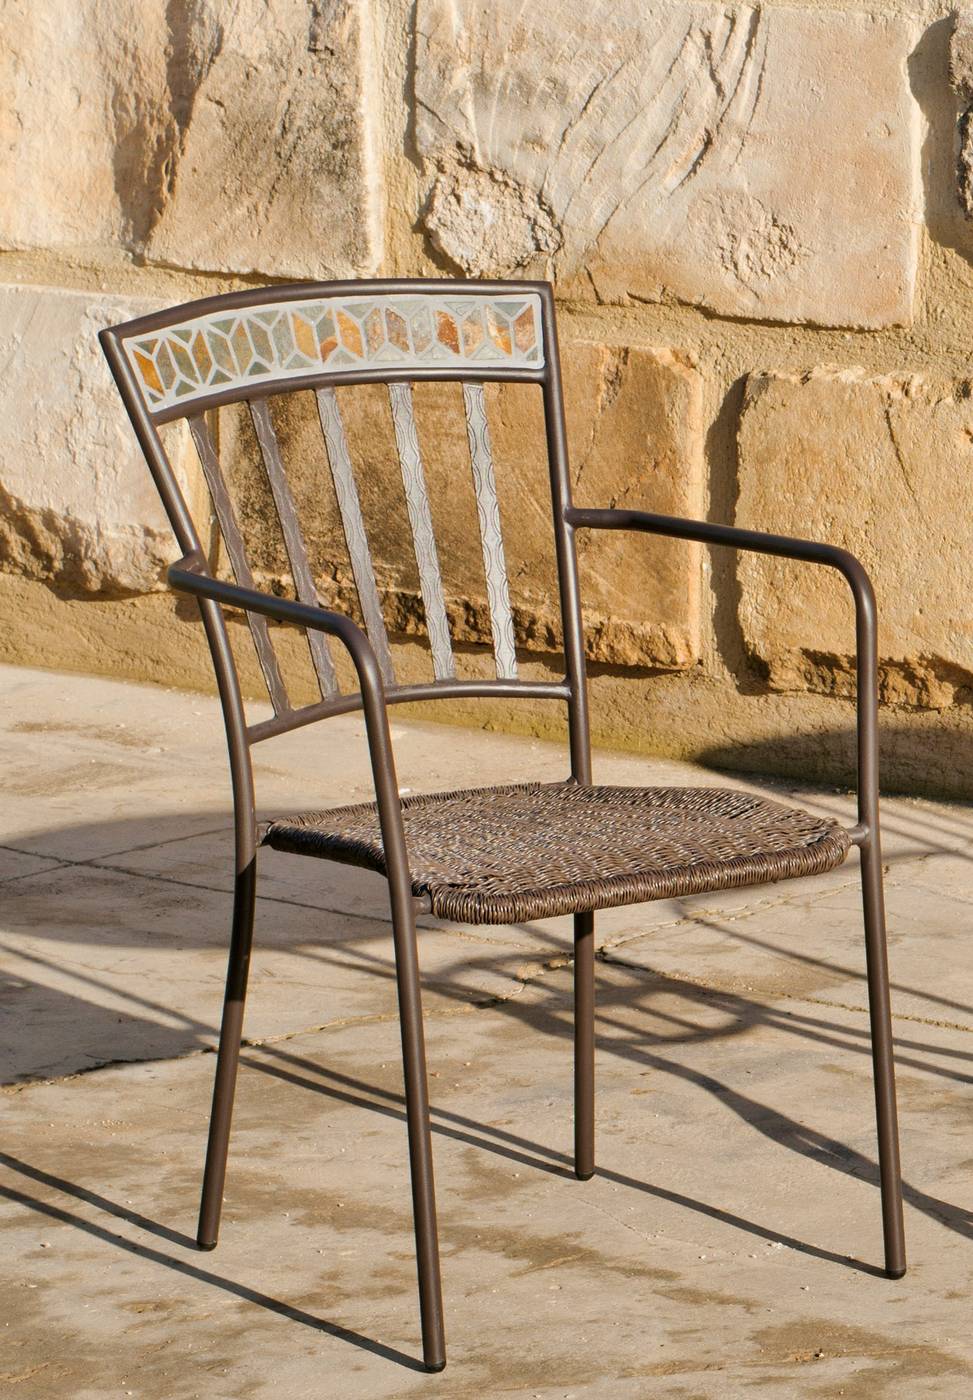 Lujoso sillón de forja color bronce, apilable, con asiento de ratán sintético